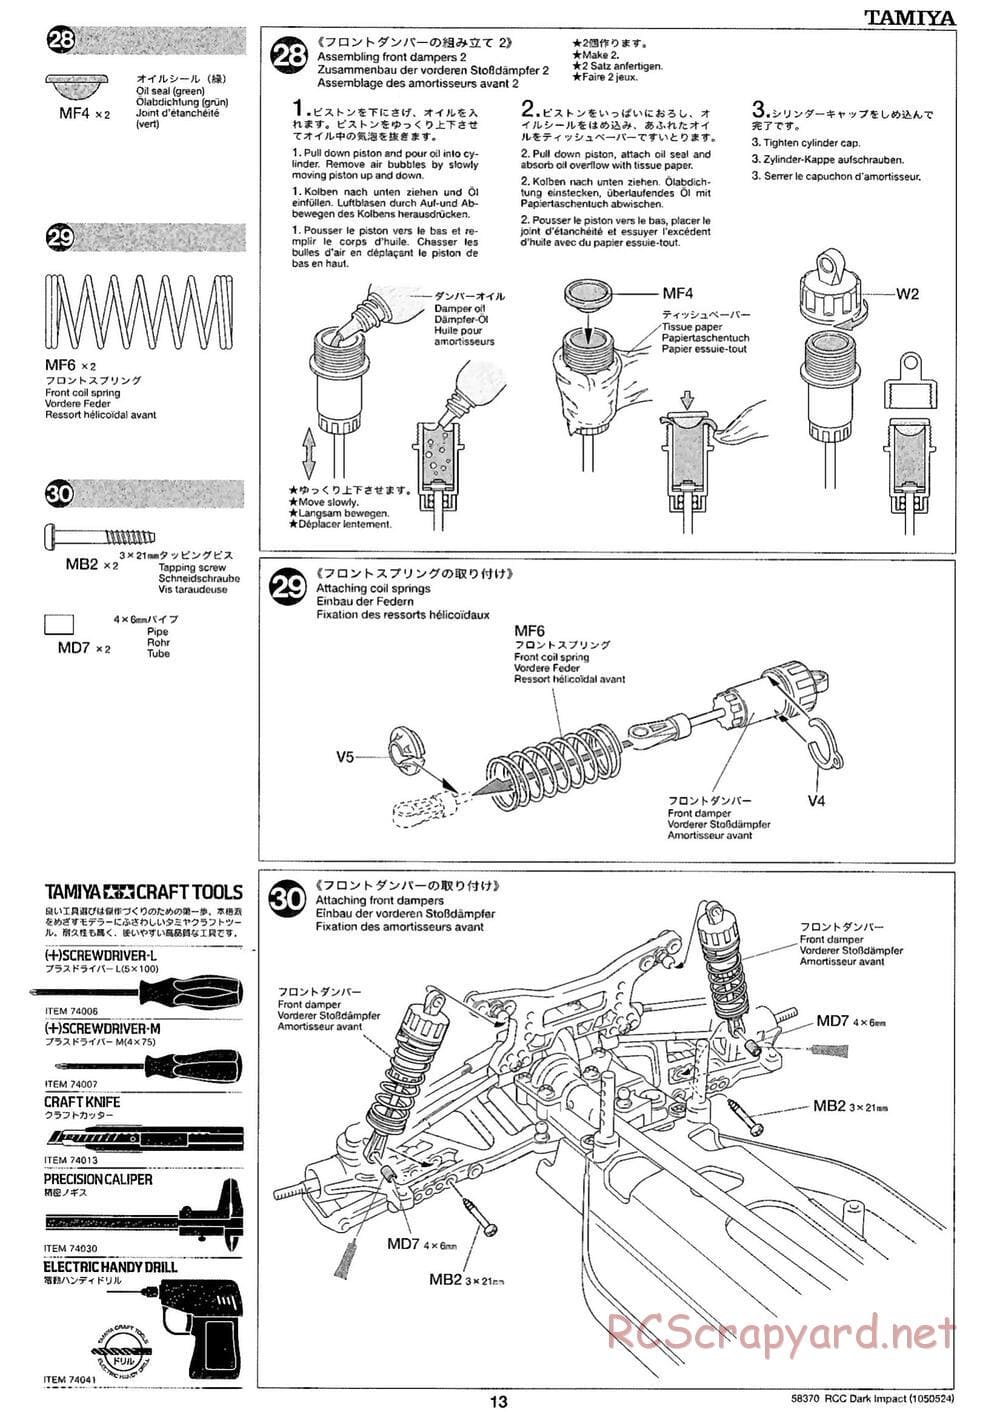 Tamiya - Dark Impact Chassis - Manual - Page 13